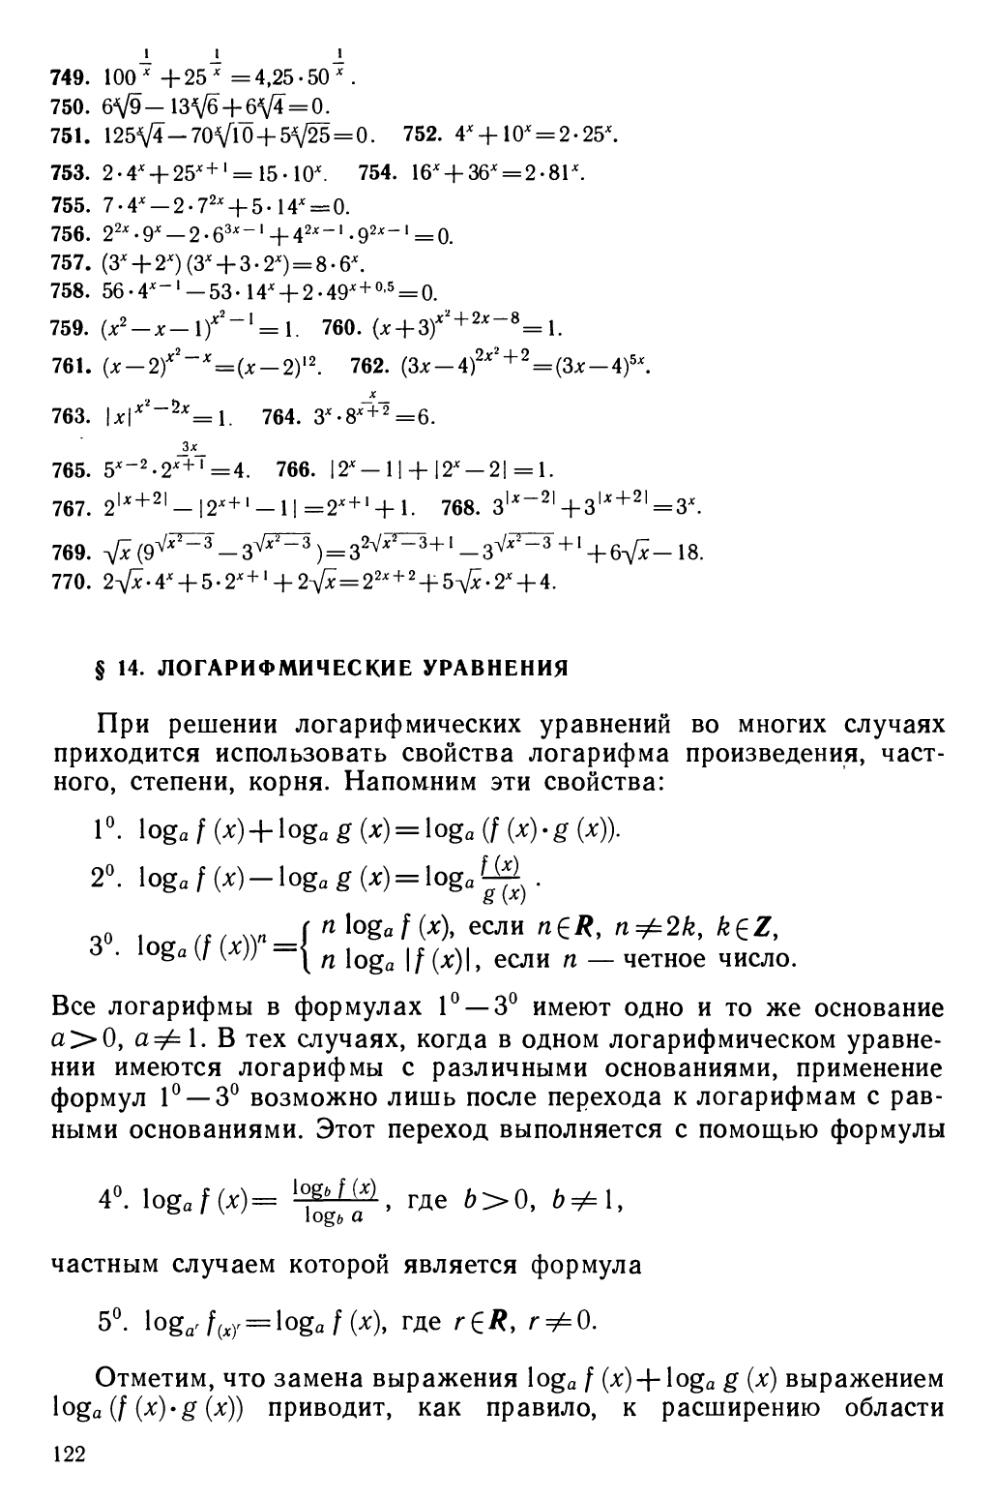 § 14 Логарифмические уравнения